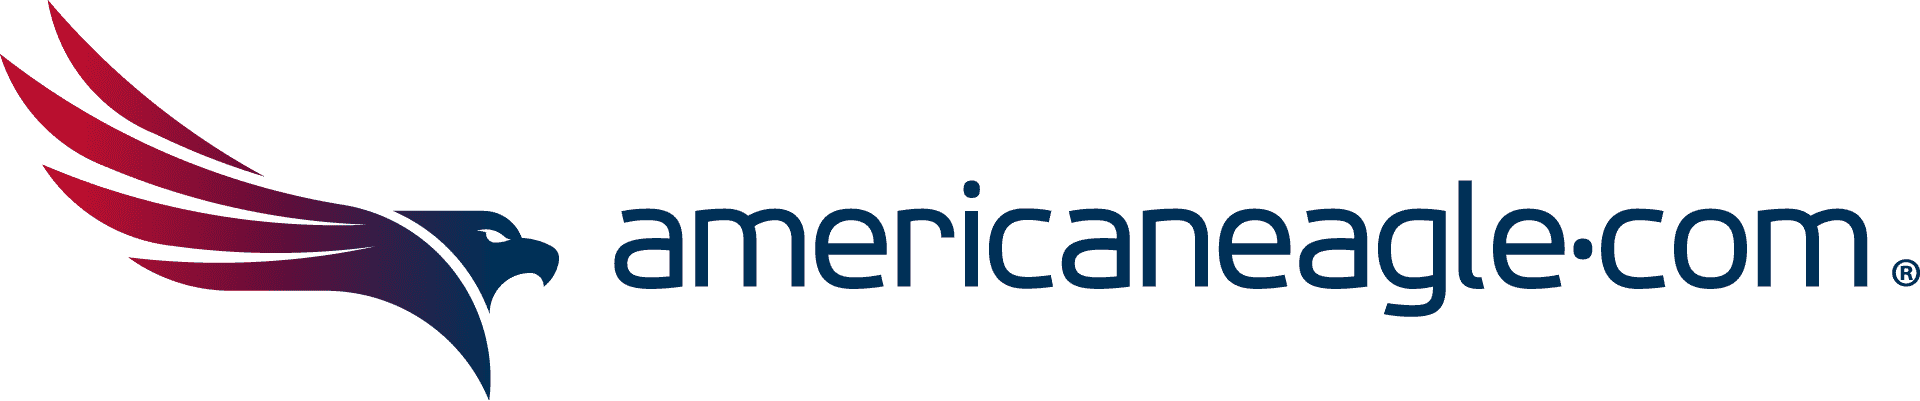 Americaneagle.com - WP Engine Agency Partner